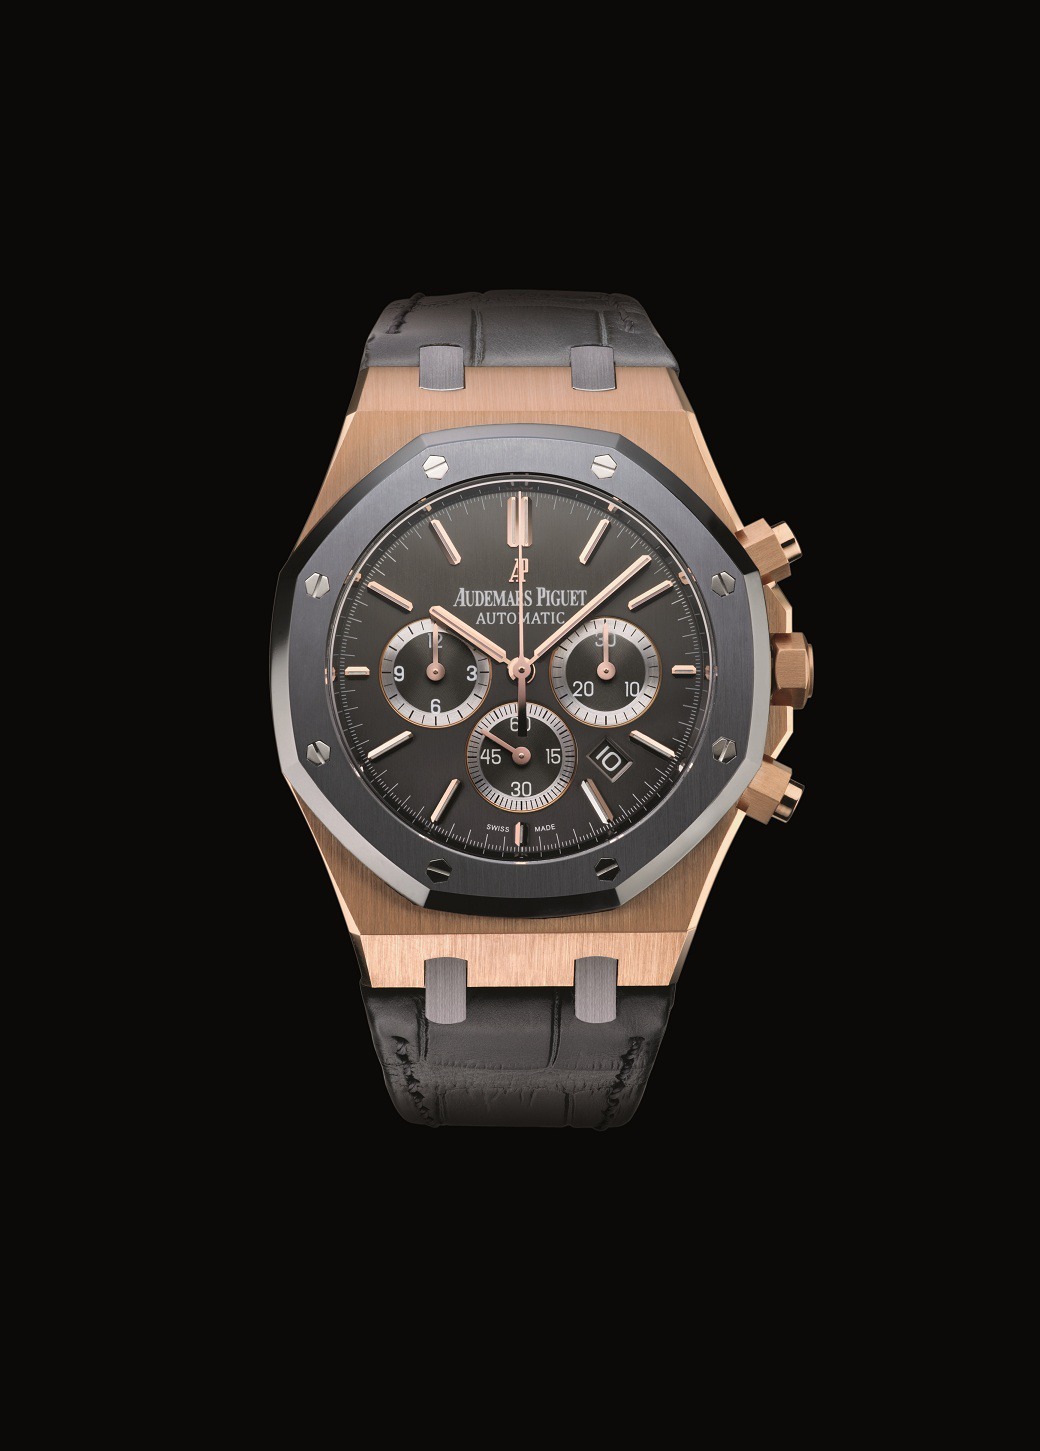 Audemars Piguet Royal Oak Leo Messi Pink Gold watch REF: 26325OL.OO.D005CR.01